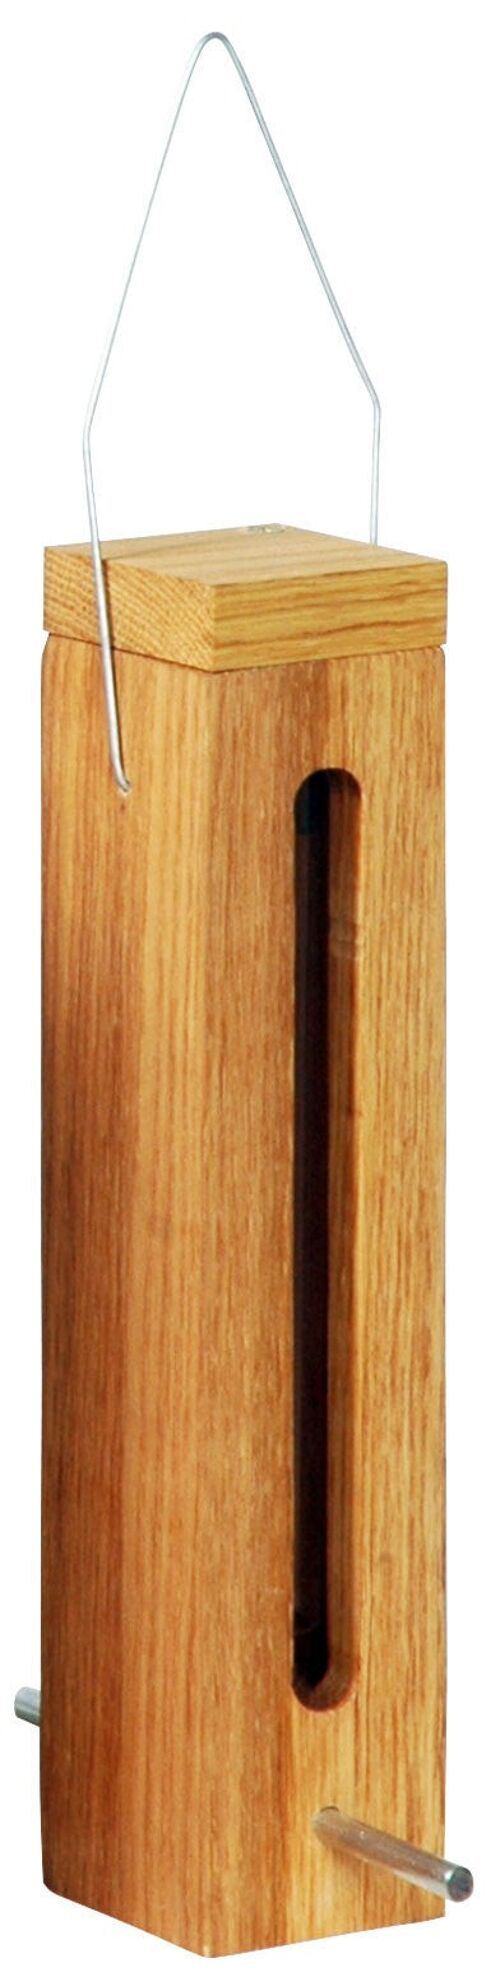 Eichenholz-Futterspender mit Futtersilo und Metallaufhängung (46770e / 46772e) - 5 x 5 x 23 cm